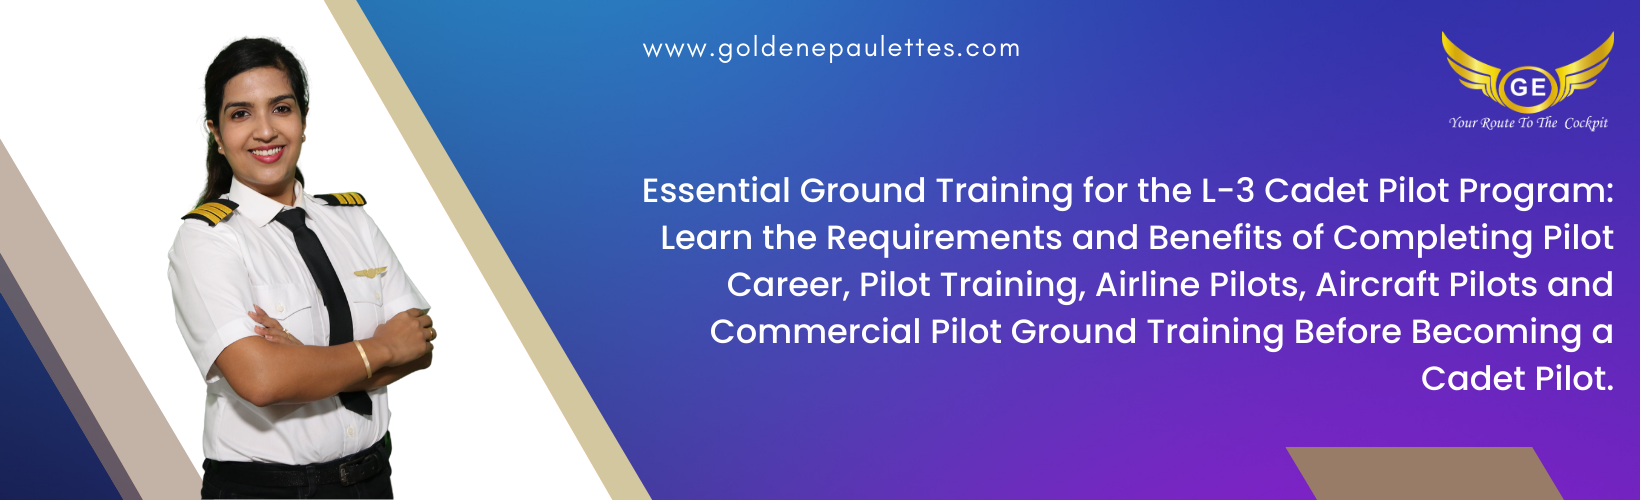 Essential Ground Training for the L-3 Cadet Pilot Program